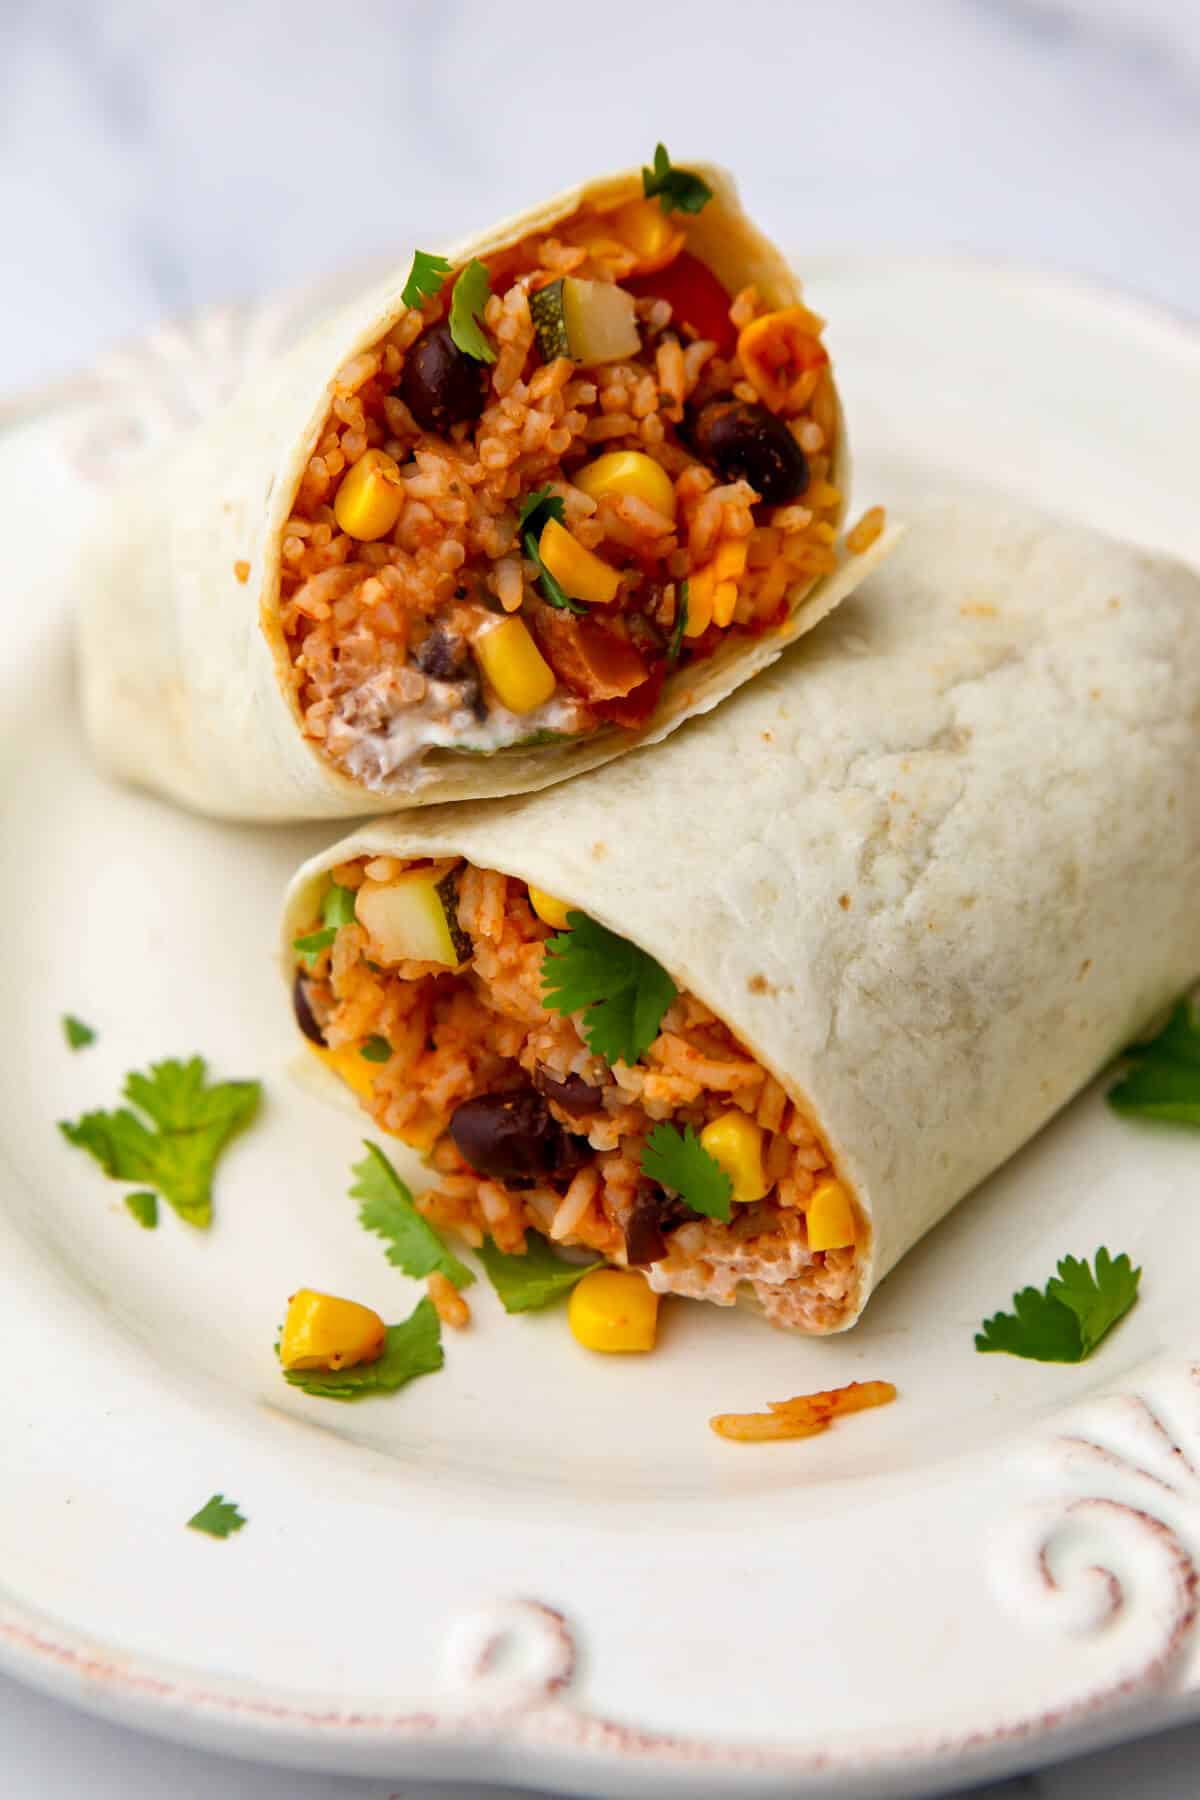 Vegan burritos filled with Mexican rice, vegan sour cream, and cilantro.